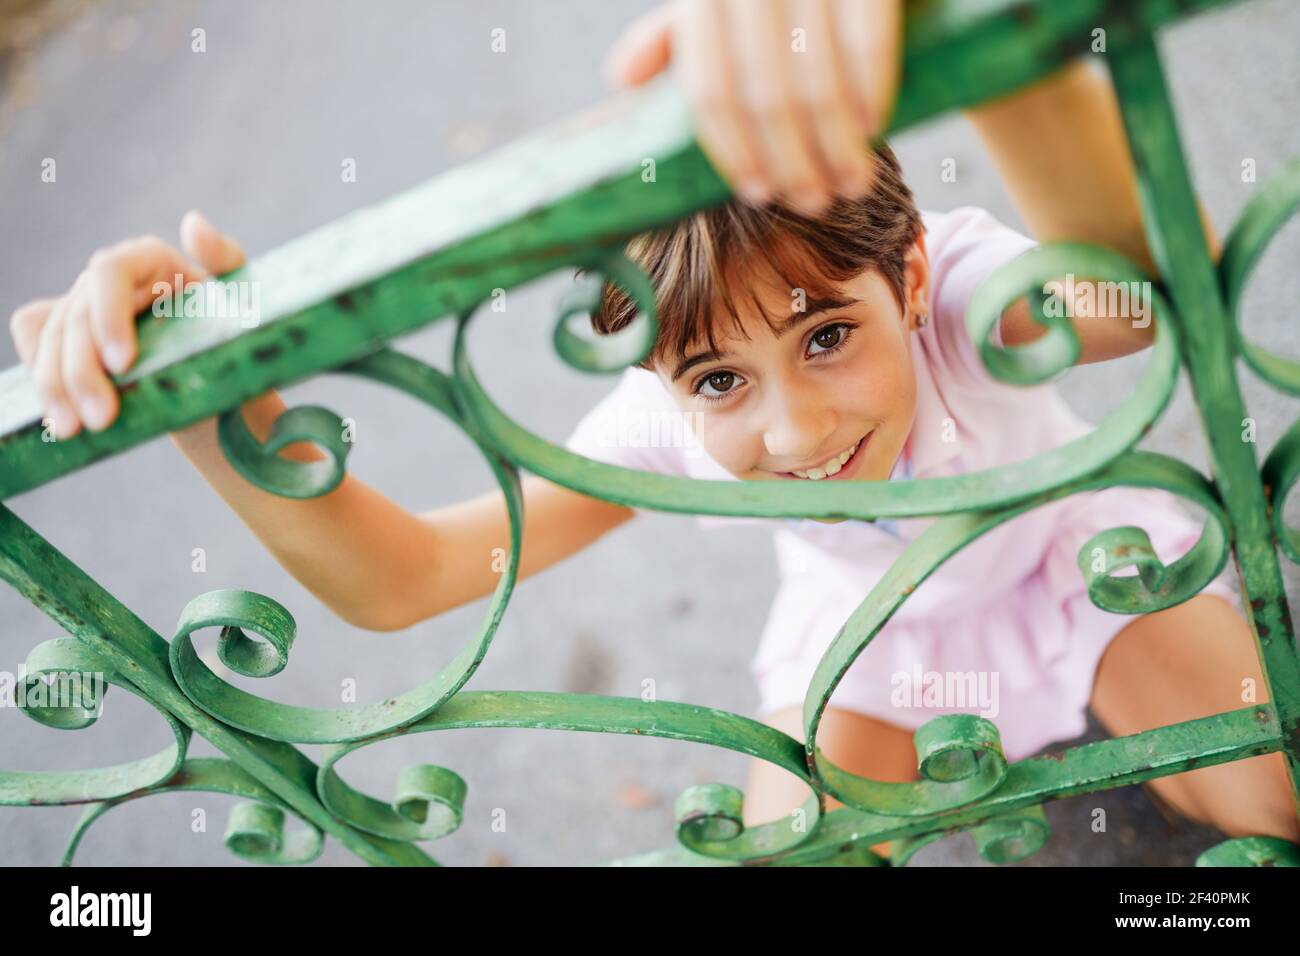 Bambina, con capelli corti, che gioca con una recinzione in ferro battuto. Bambina, otto anni, che si diverte in un parco urbano. Foto Stock